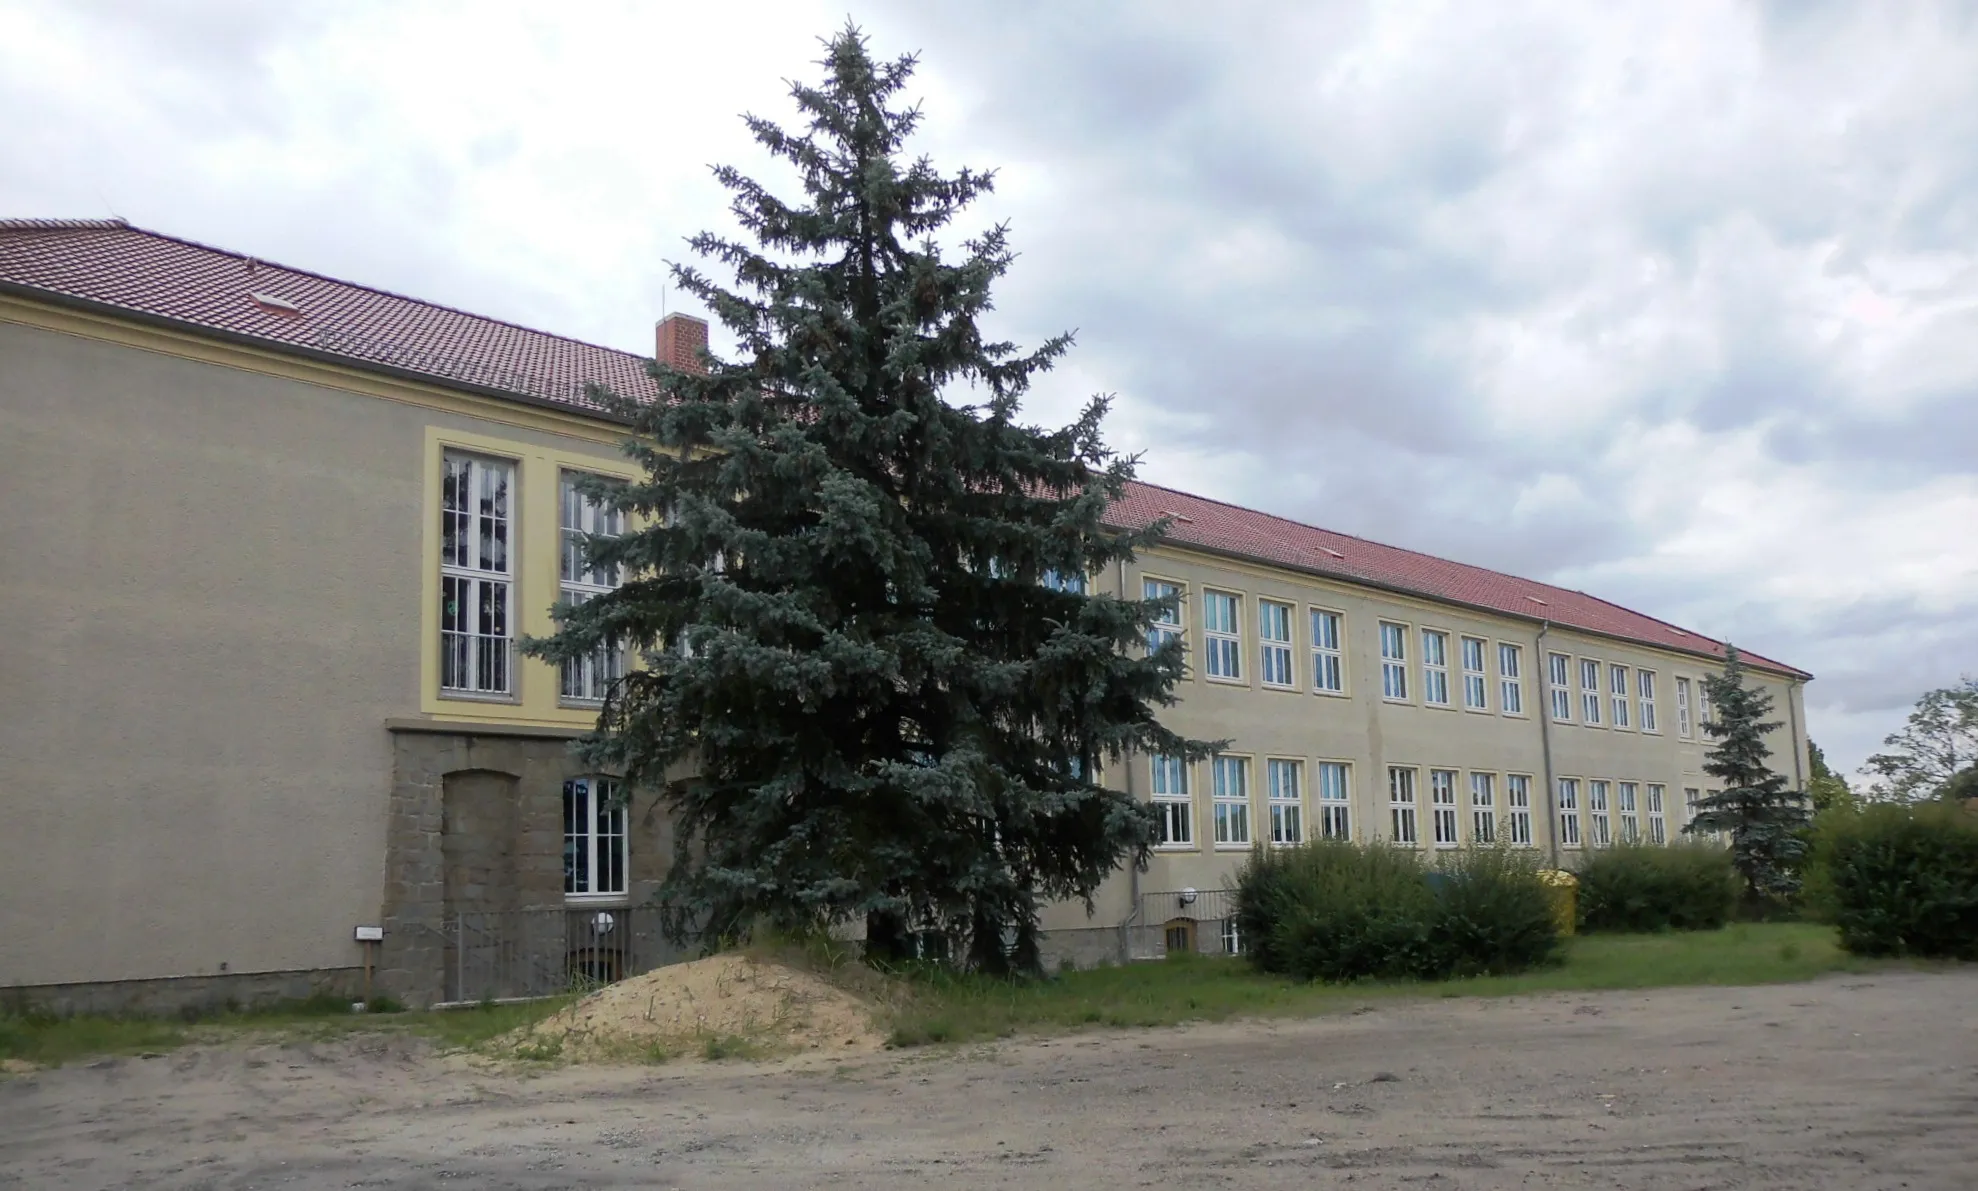 Photo showing: als Baudenkmal ausgewiesene ehemalige Zentralschule (heute Grundschule) in der Gemeinde Ziltendorf, Landkreis Oder-Spree, Deutschland